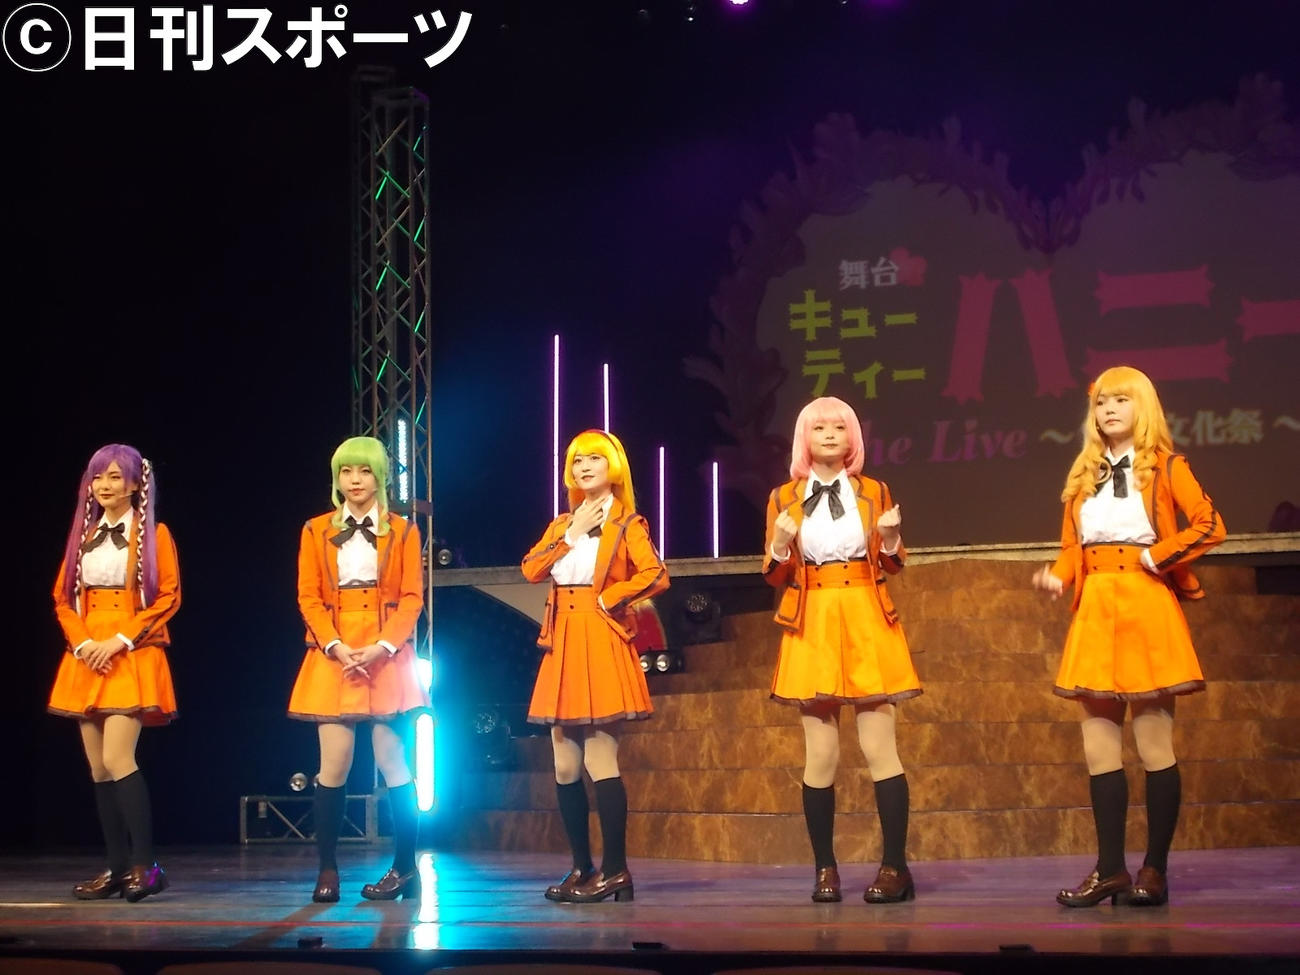 舞台「キューティーハニー」の出演者。左から、池松愛理、佐藤日向、上西恵、西葉瑞希、平塚日菜